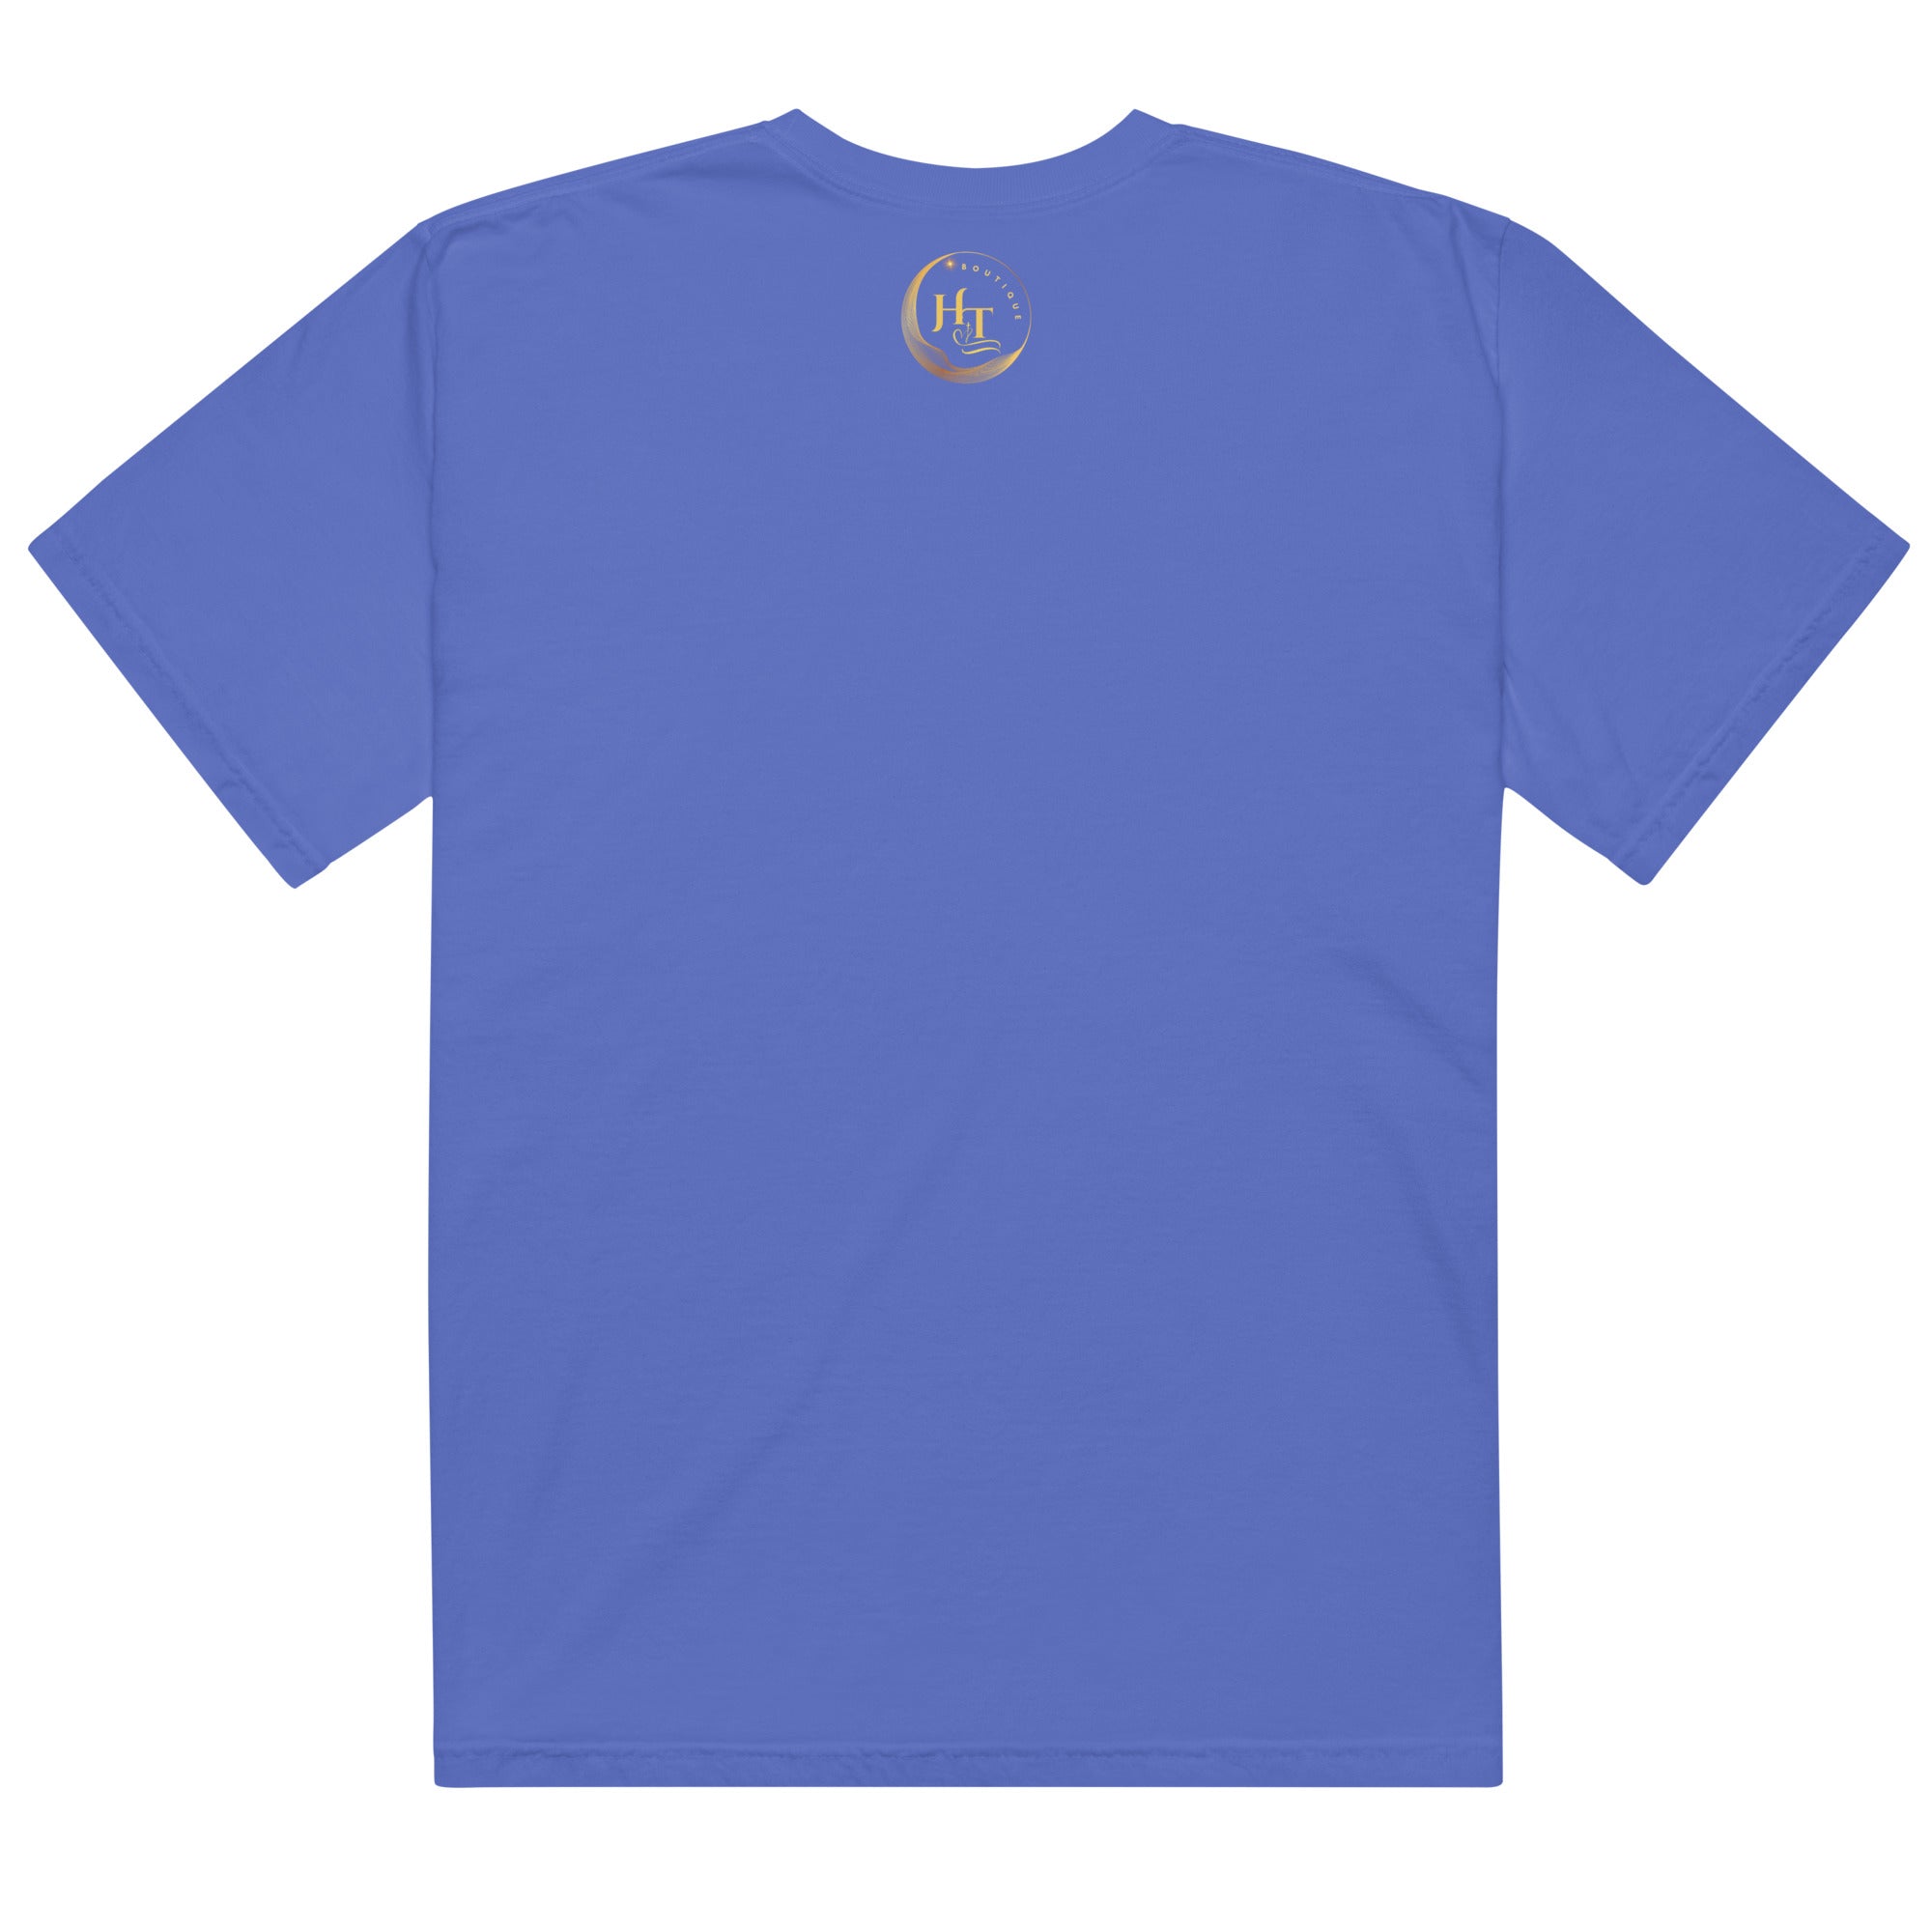 Golden Heart Unisex garment-dyed heavyweight t-shirt